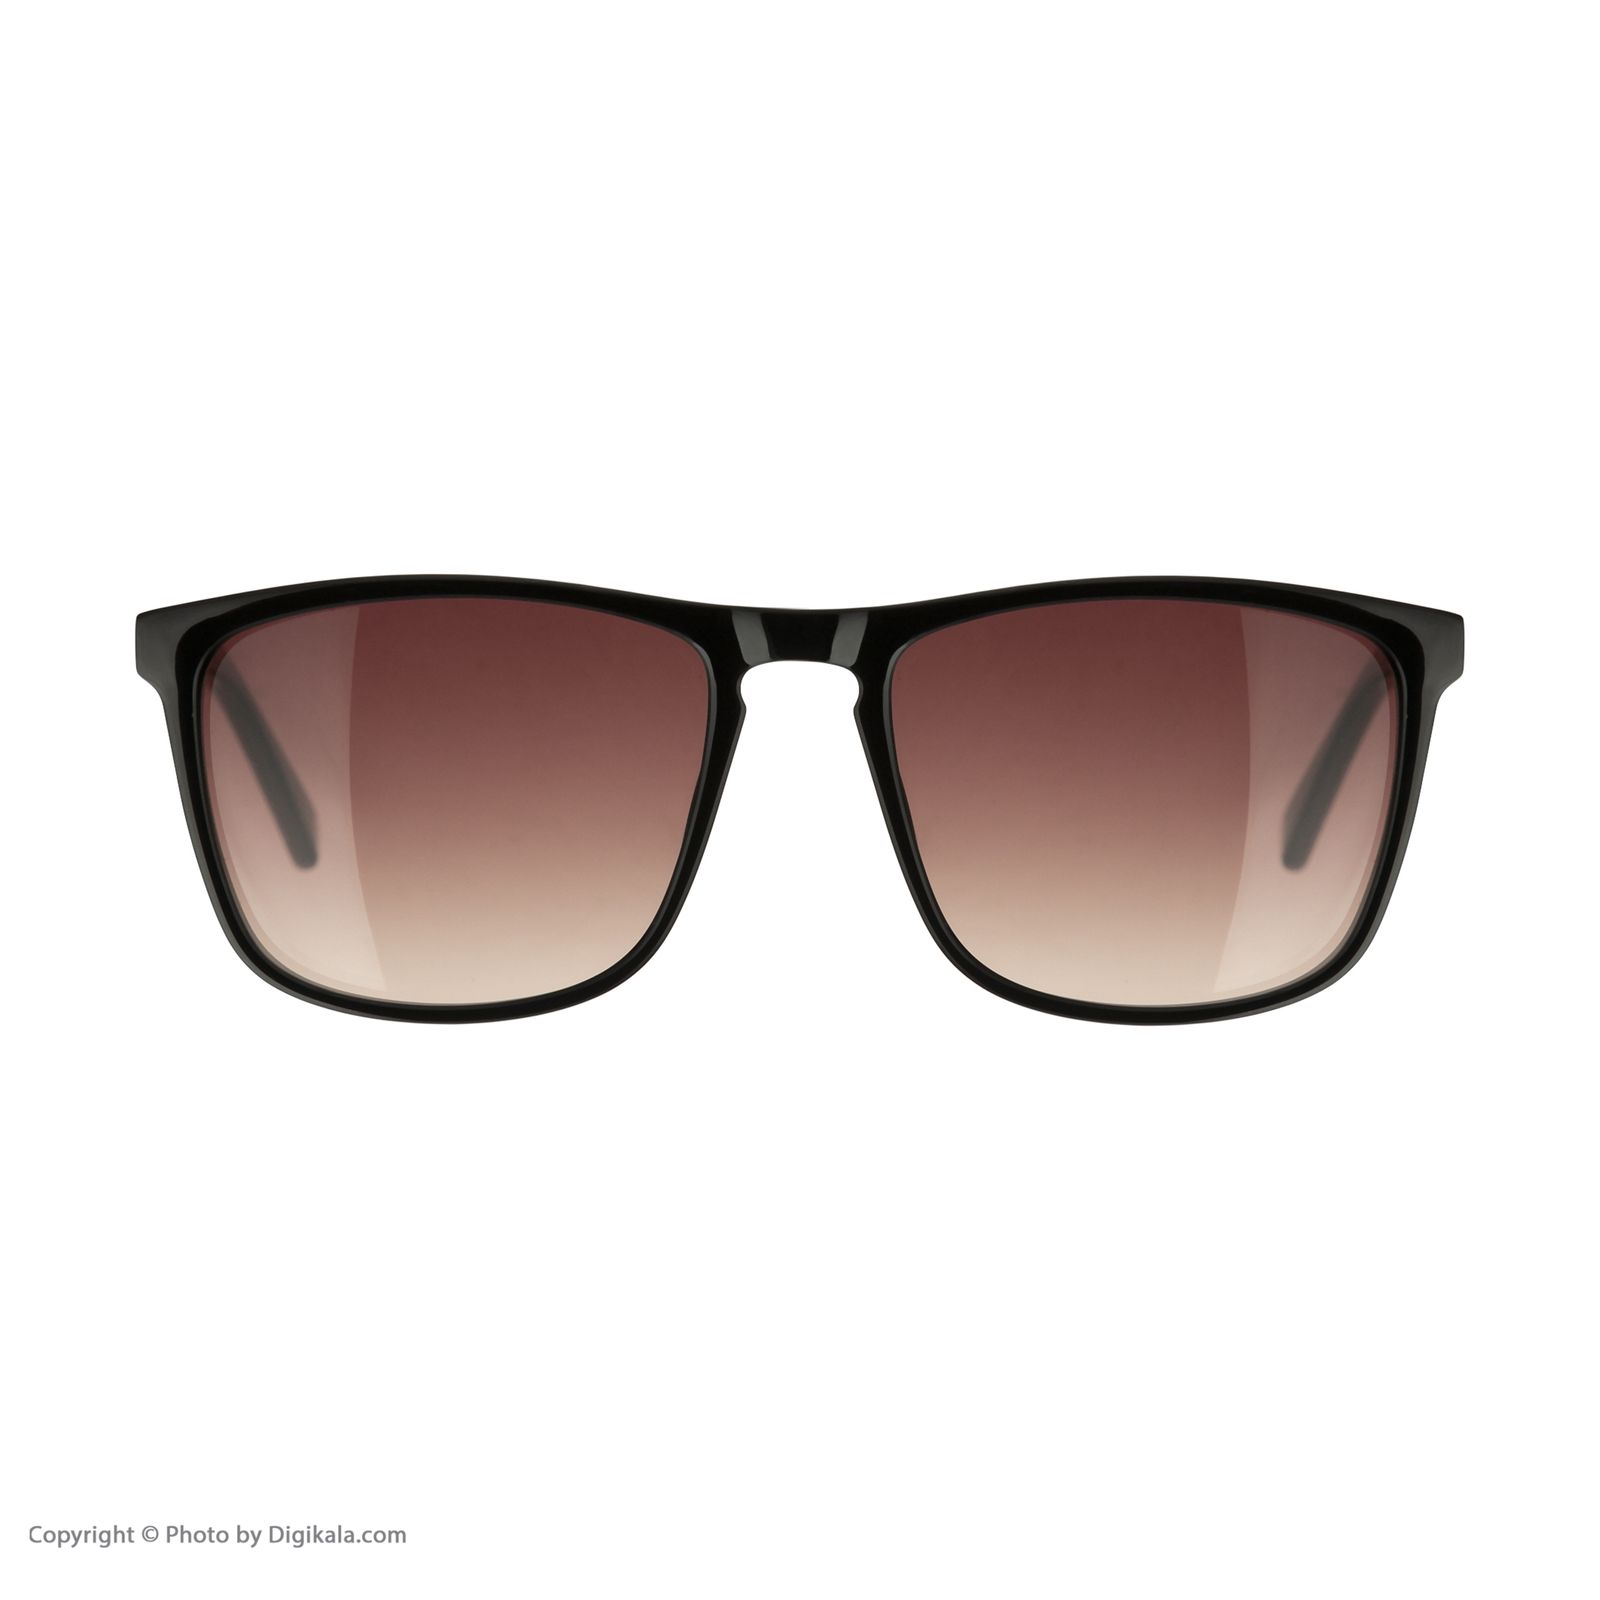 عینک آفتابی مردانه تد بیکر مدل TB 1535 OO1 -  - 2